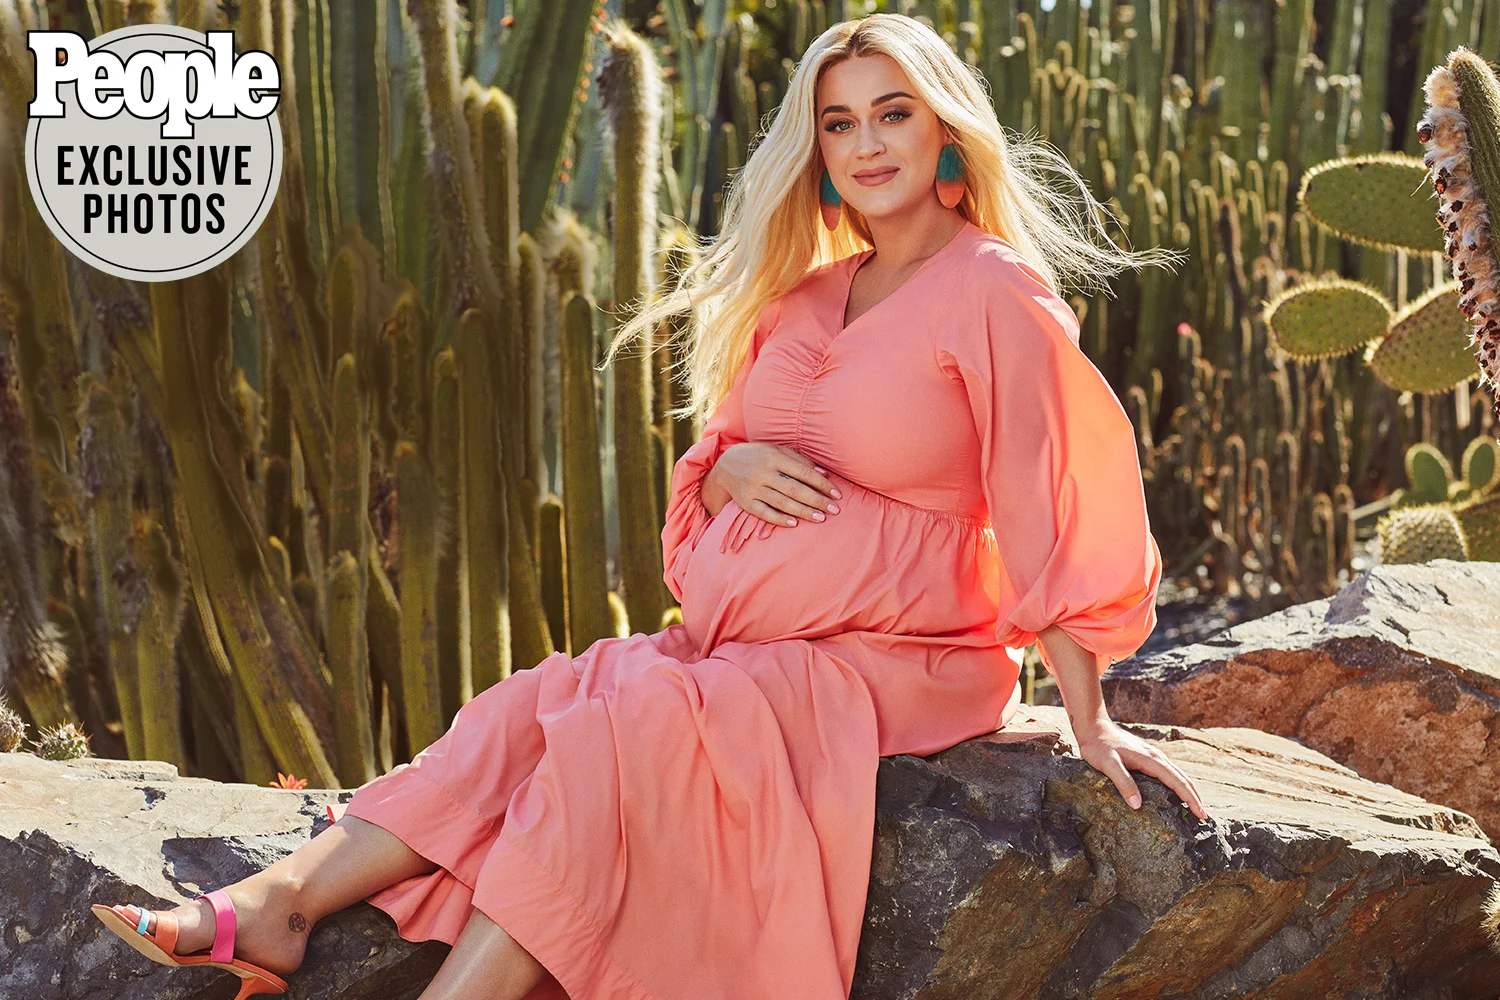 "5 anos atrás, eu teria dito para tirarem esse bebê de mim", revela Katy Perry sobre medo da maternidade. Foto: Revista People